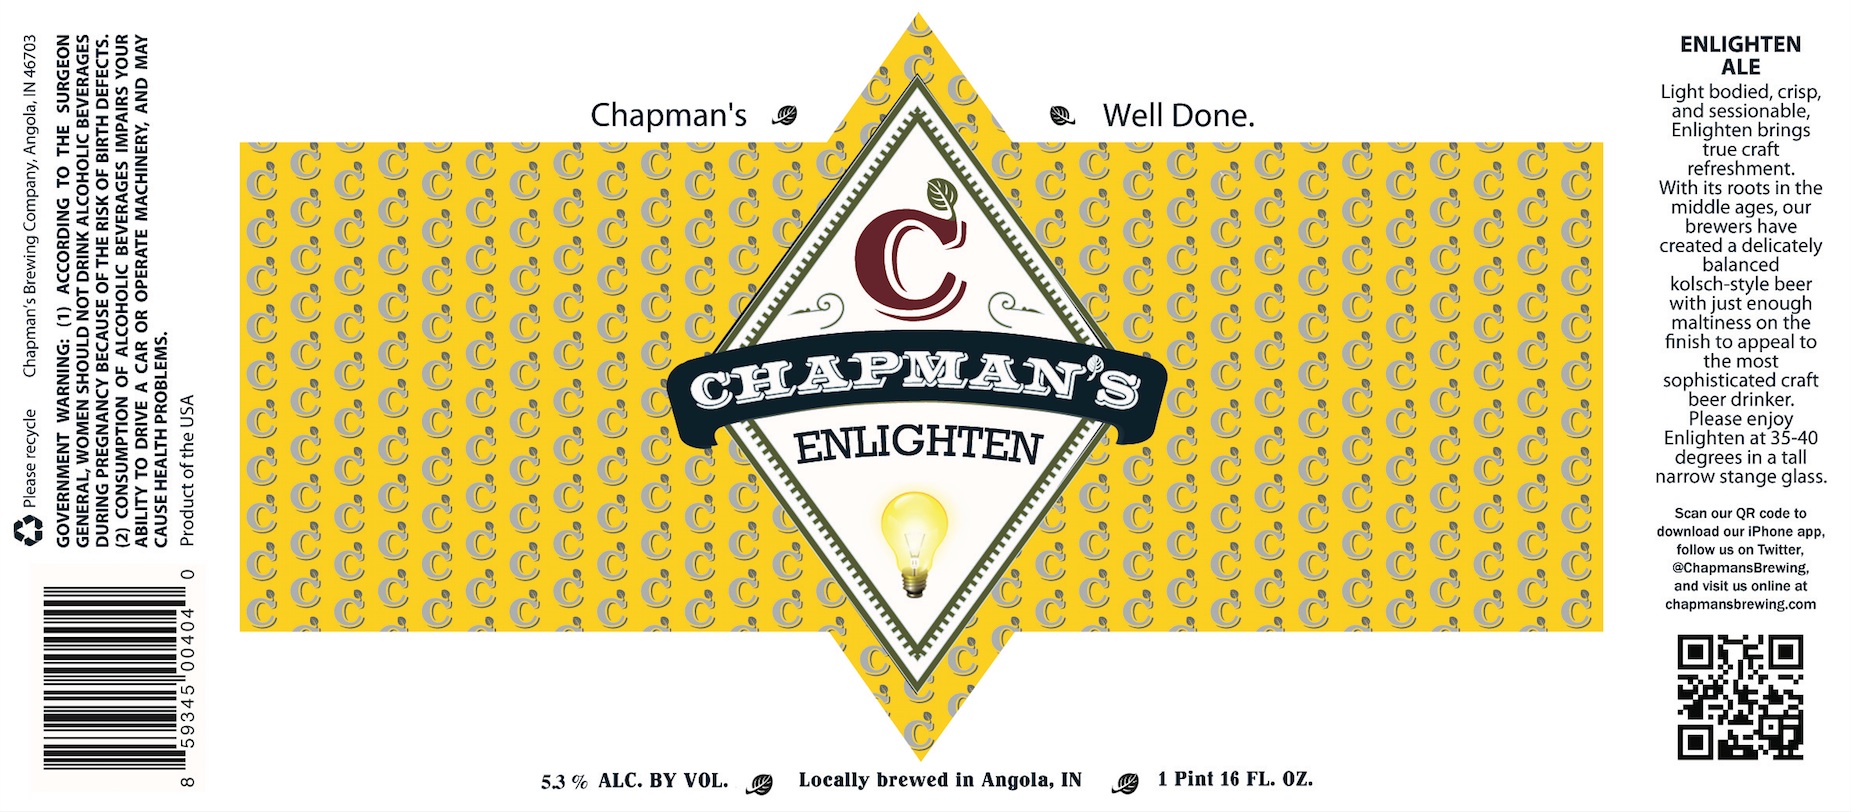 Chapman's Enlighten